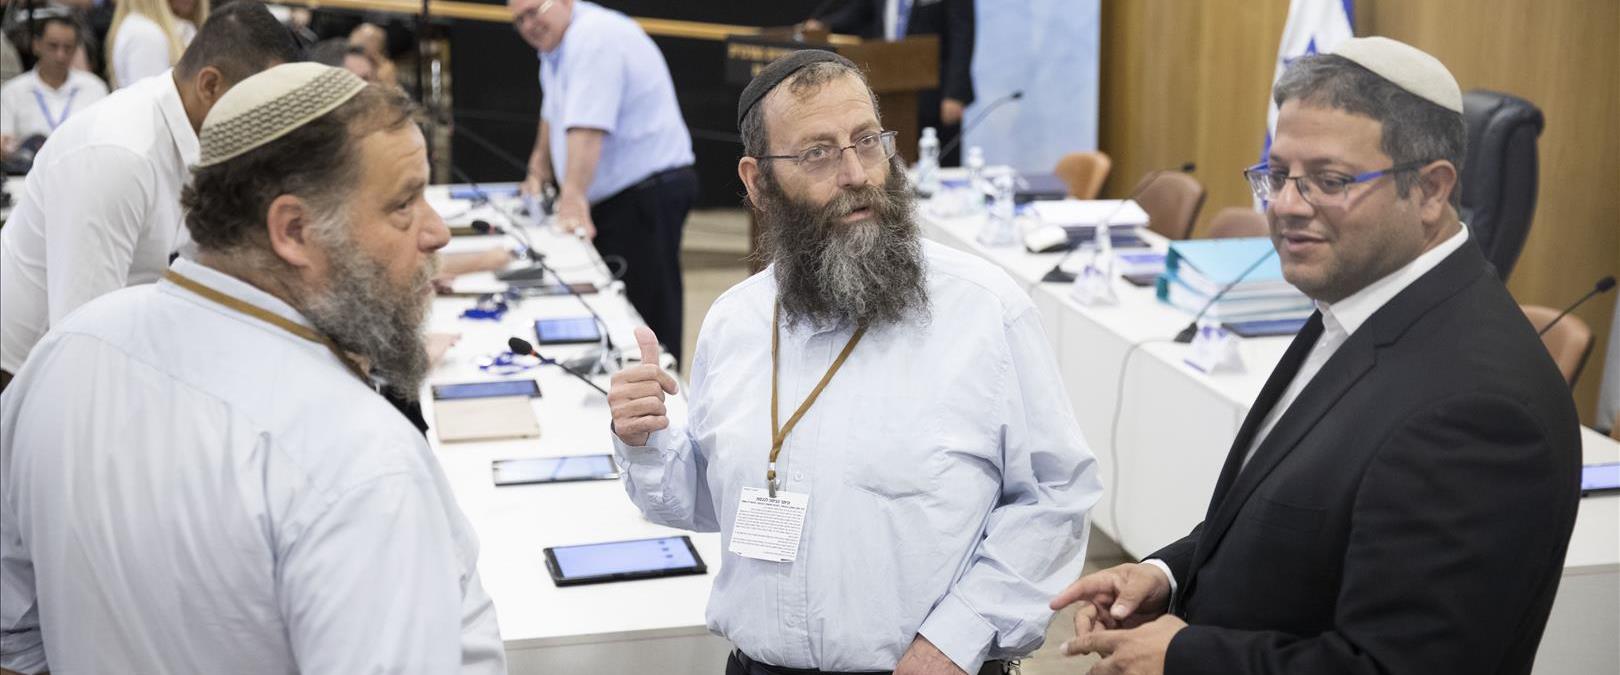 אנשי עוצמה יהודית בדיון בוועדת הבחירות